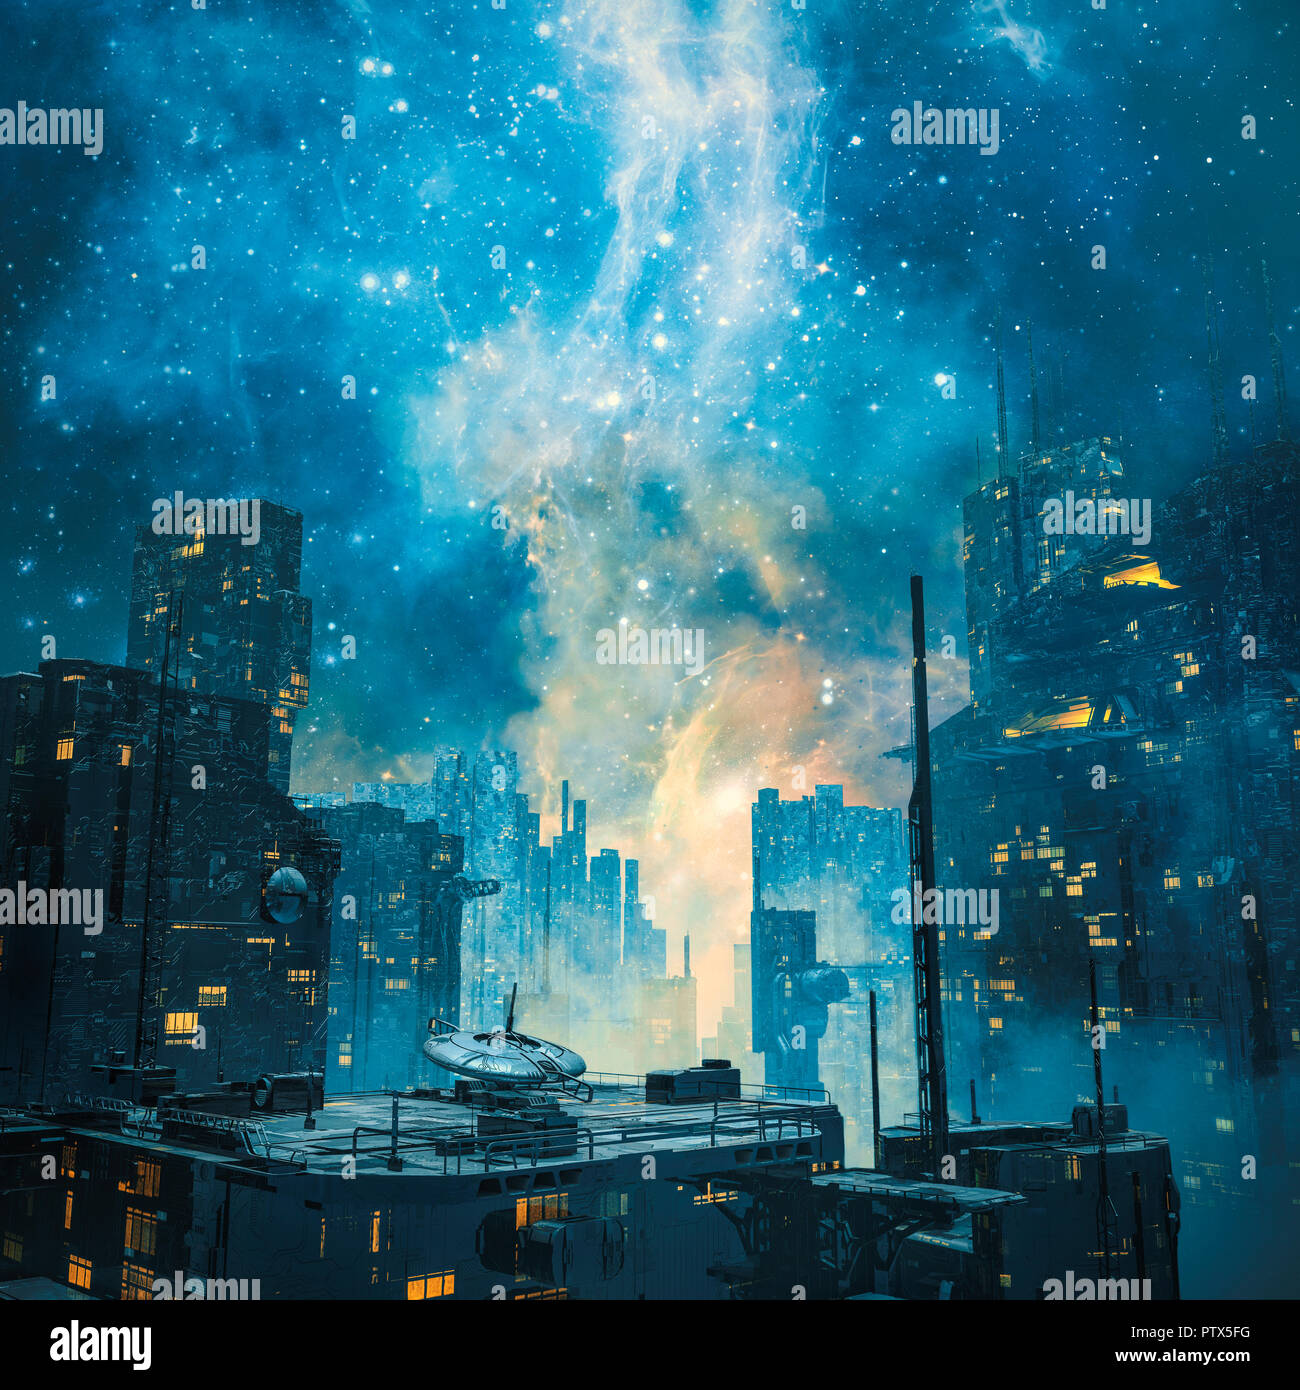 Colonie de l'espace galactique par nuit / 3D illustration de la science-fiction futuriste sombre ville sous une galaxie dans le ciel Banque D'Images